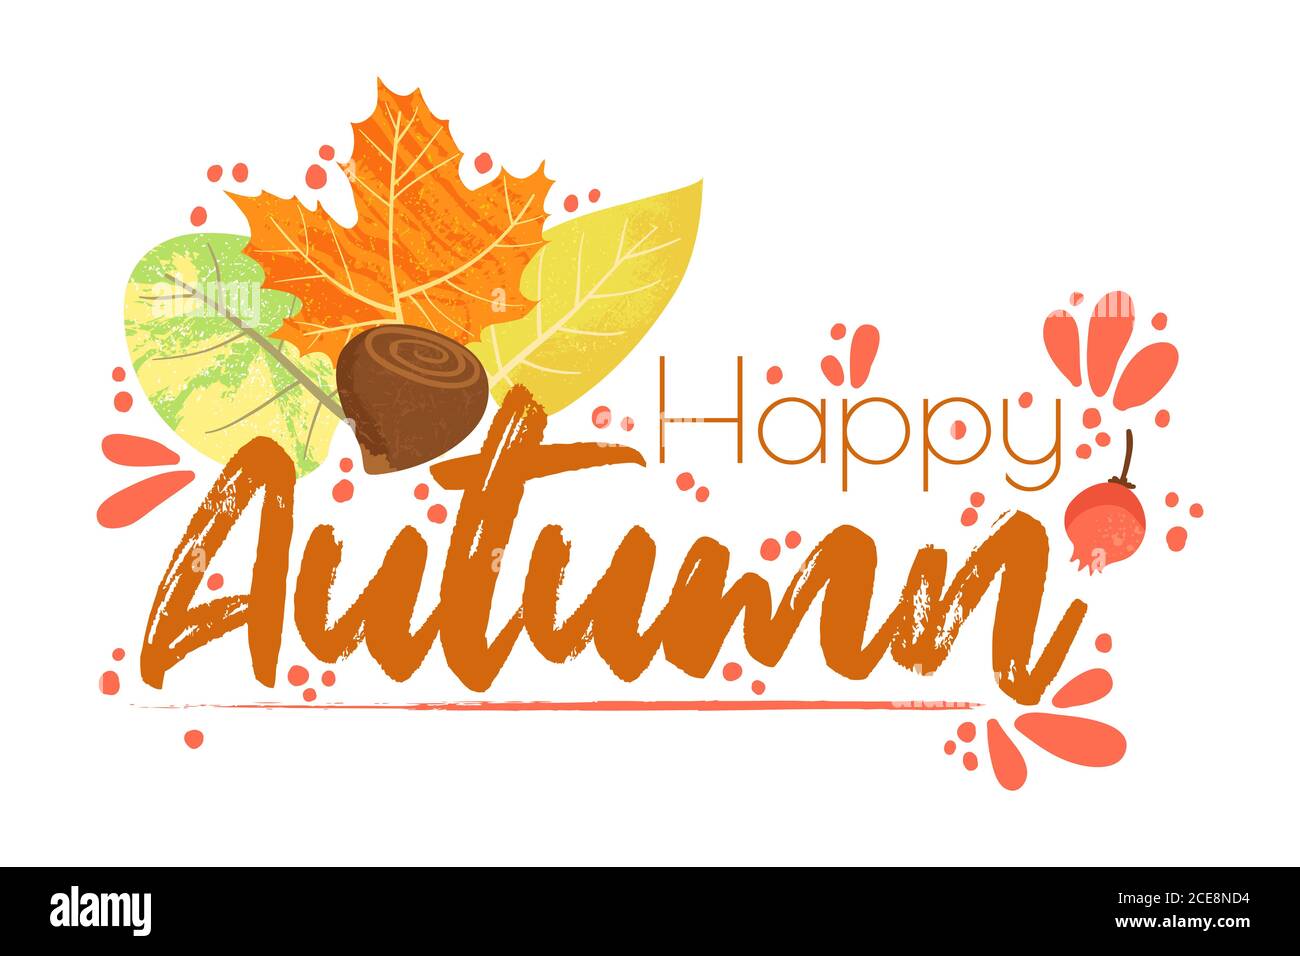 Happy Autumn - Herbst Typografie Zitate mit Herbst Elemente. Vektor-Zitate mit Herbstblättern, Walnüssen und Beeren. Isoliert auf weißem Hintergrund Stock Vektor